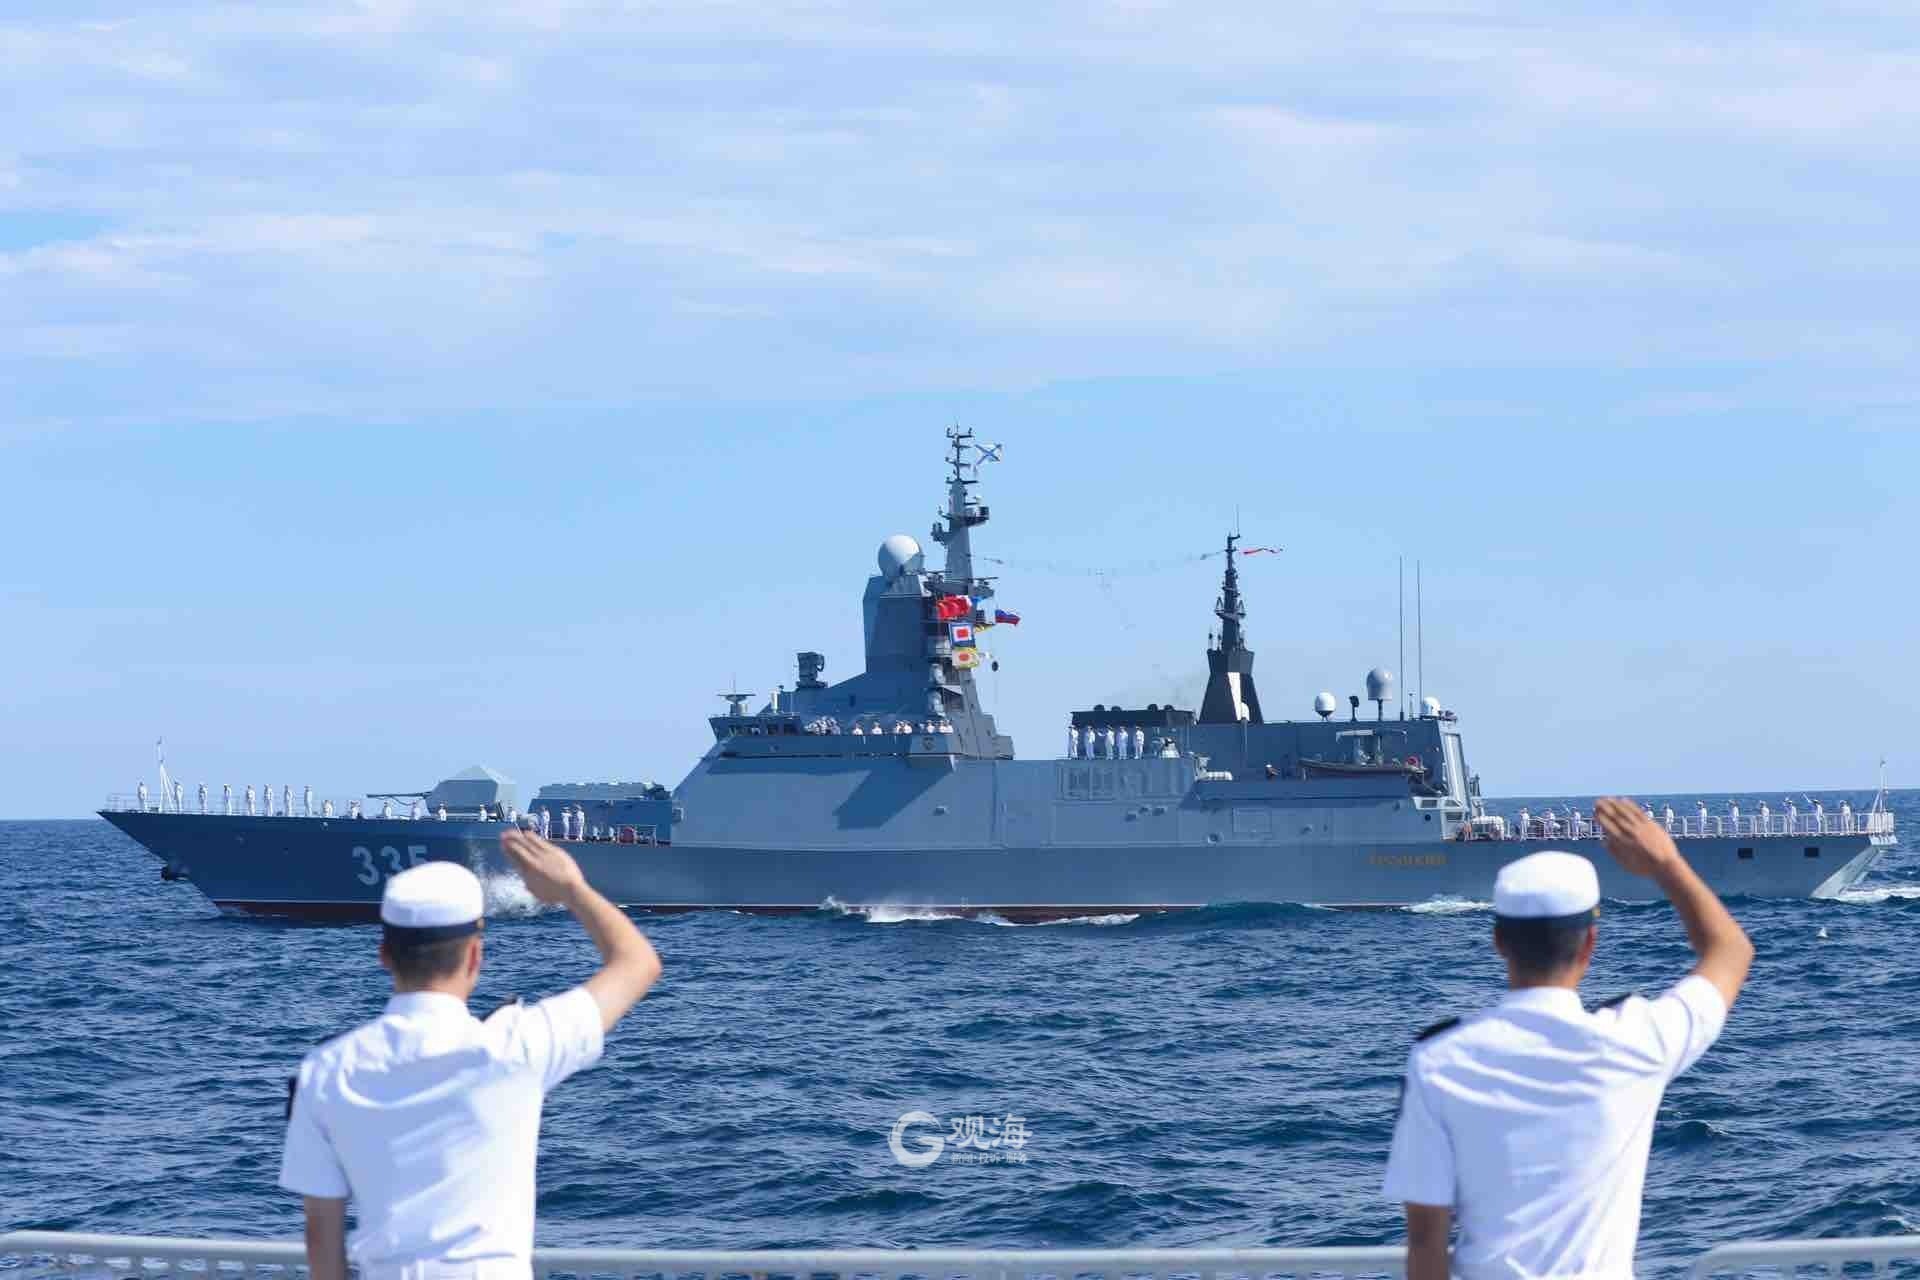 海洋之杯水面舰艇专业比赛在青岛附近海域闭幕,中俄海军参赛舰艇